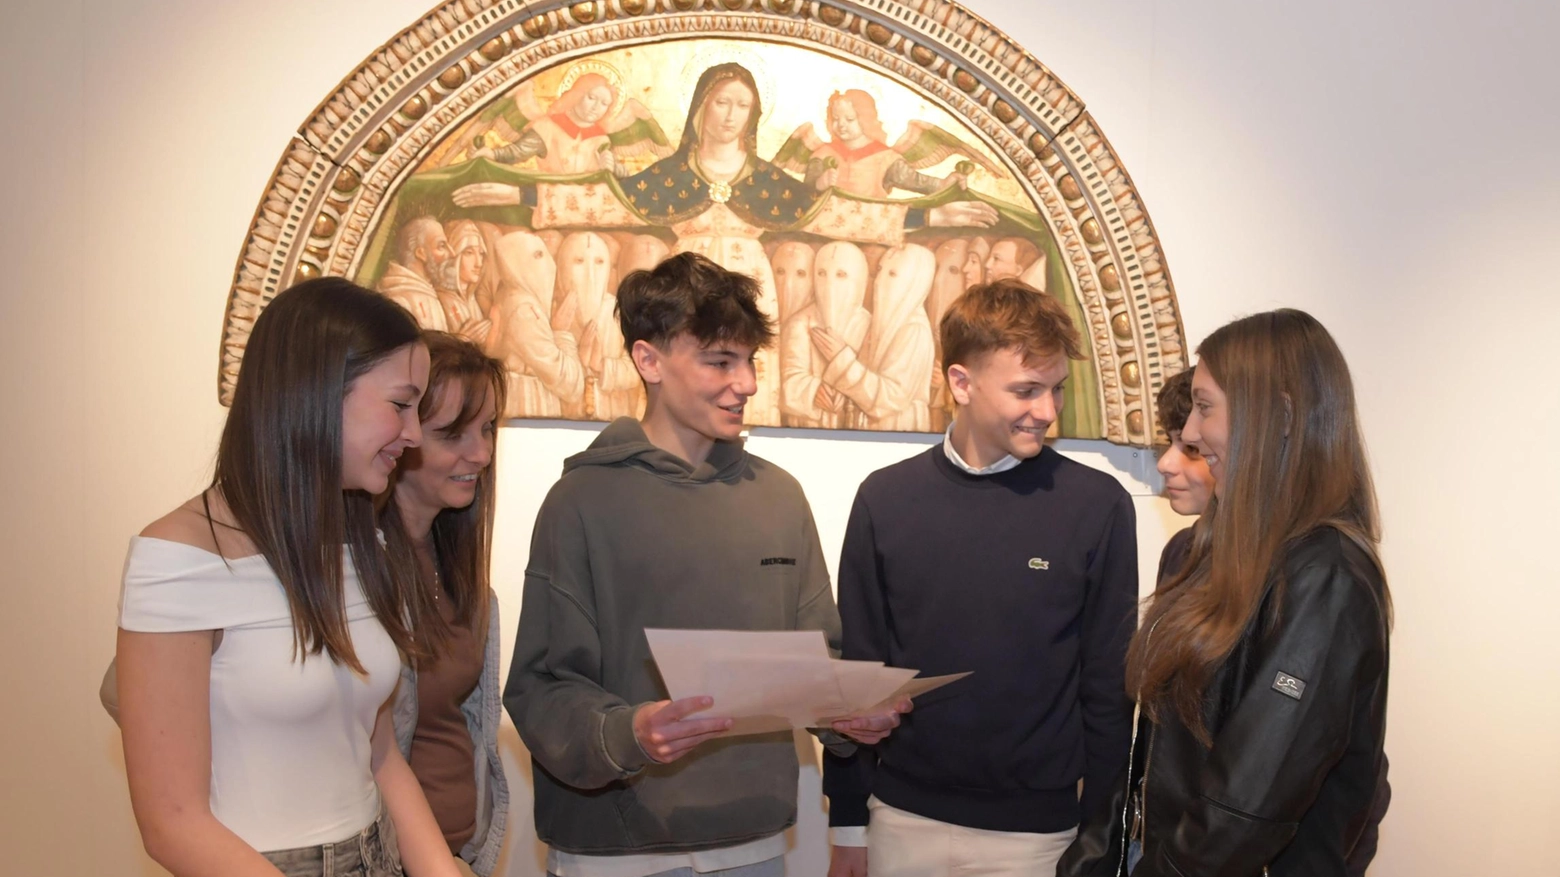 Gli studenti del Copernico di Pavia presentano una mostra sul rapporto tra Manzoni e il vescovo Tosi, esplorando antiche basiliche e tesori poco noti. Un viaggio affascinante nel dialogo tra due figure storiche.